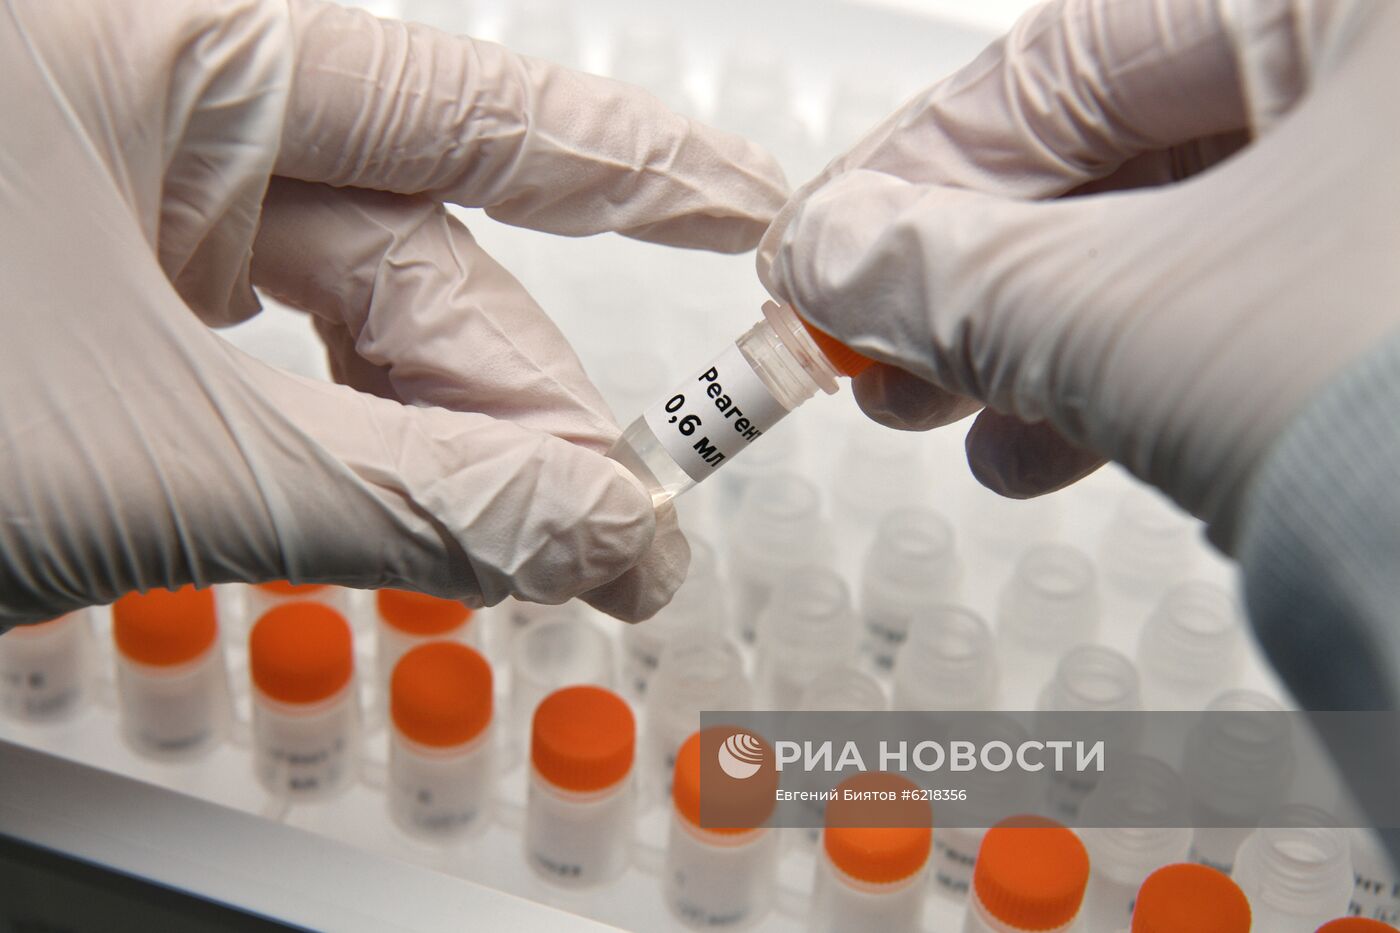 Лаборатория по производству реагентов для экспресс-тестов на коронавирус в "Сколково"